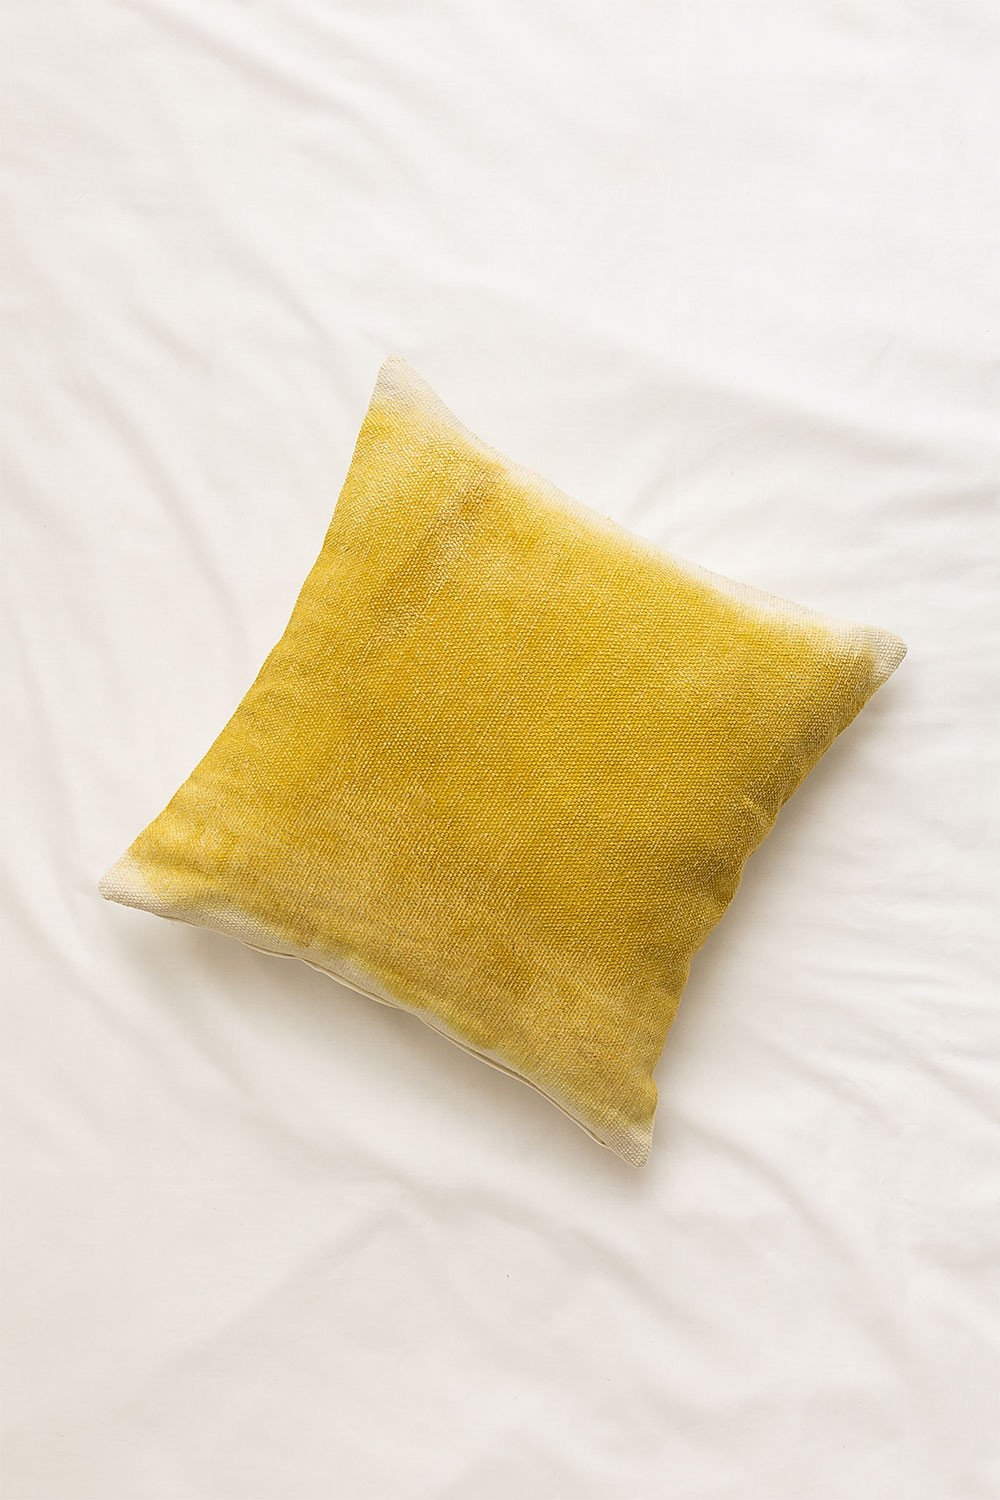 Federa cuscino (50x50 cm) Lessy, immagine della galleria 1